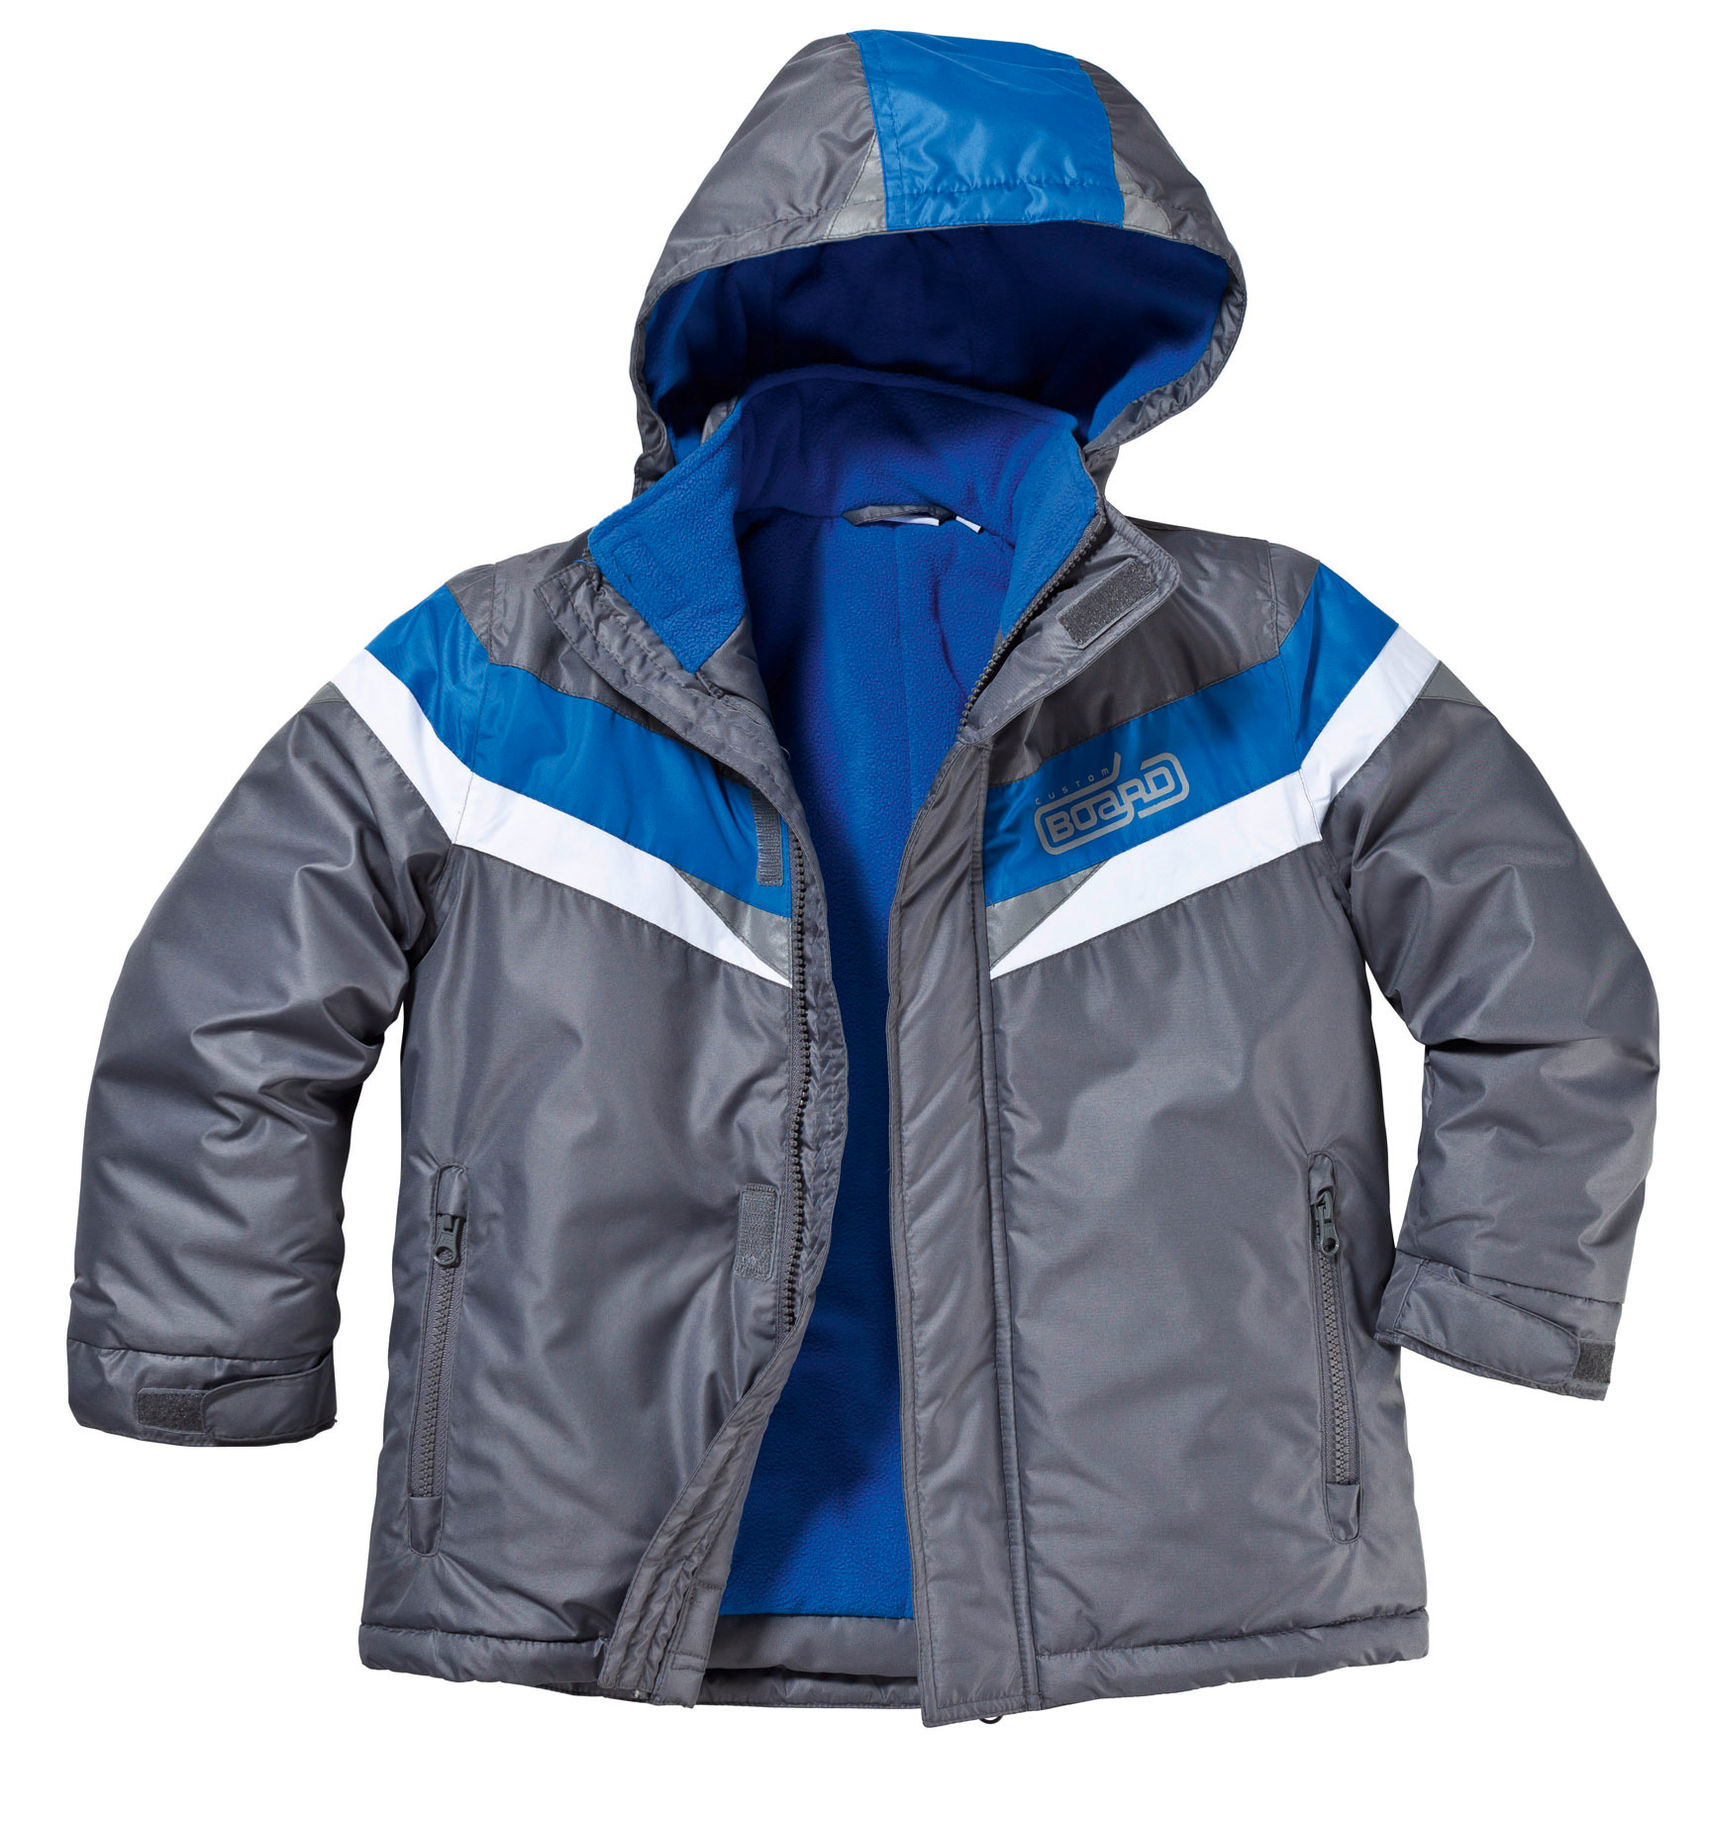 Ski-Jacke für Jungen, anthrazit-blau Größe: 110 116 | Weltbild.de